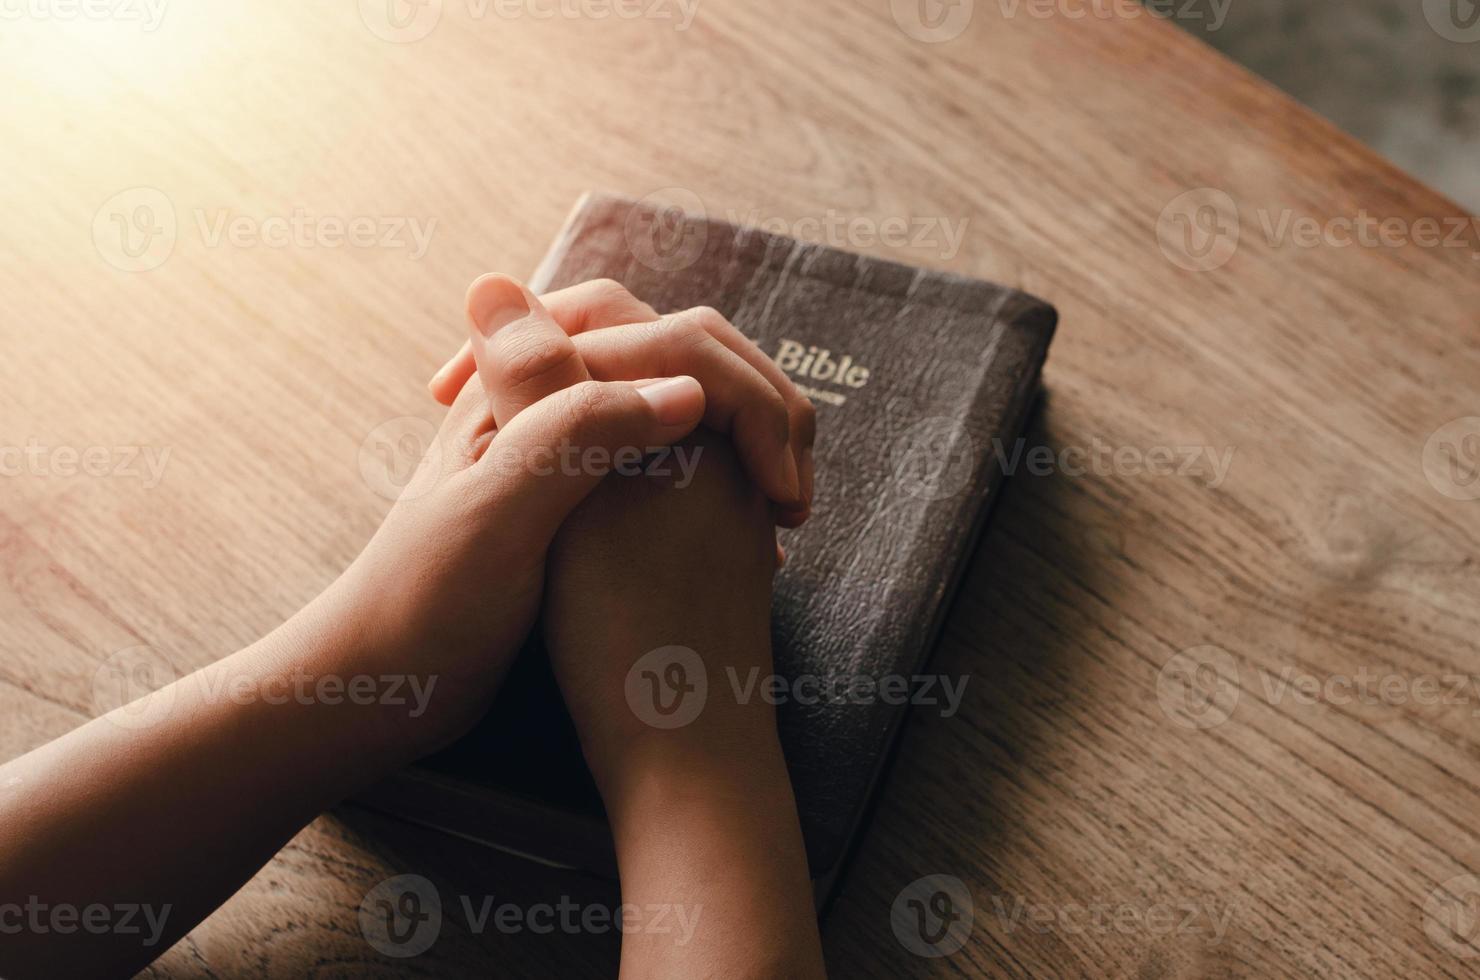 menina sentada e orando por bênçãos de Deus com a Bíblia de mãos postas em oração bíblica, espiritual e religiosa, comunique-se, fale com Deus. amor e perdão foto